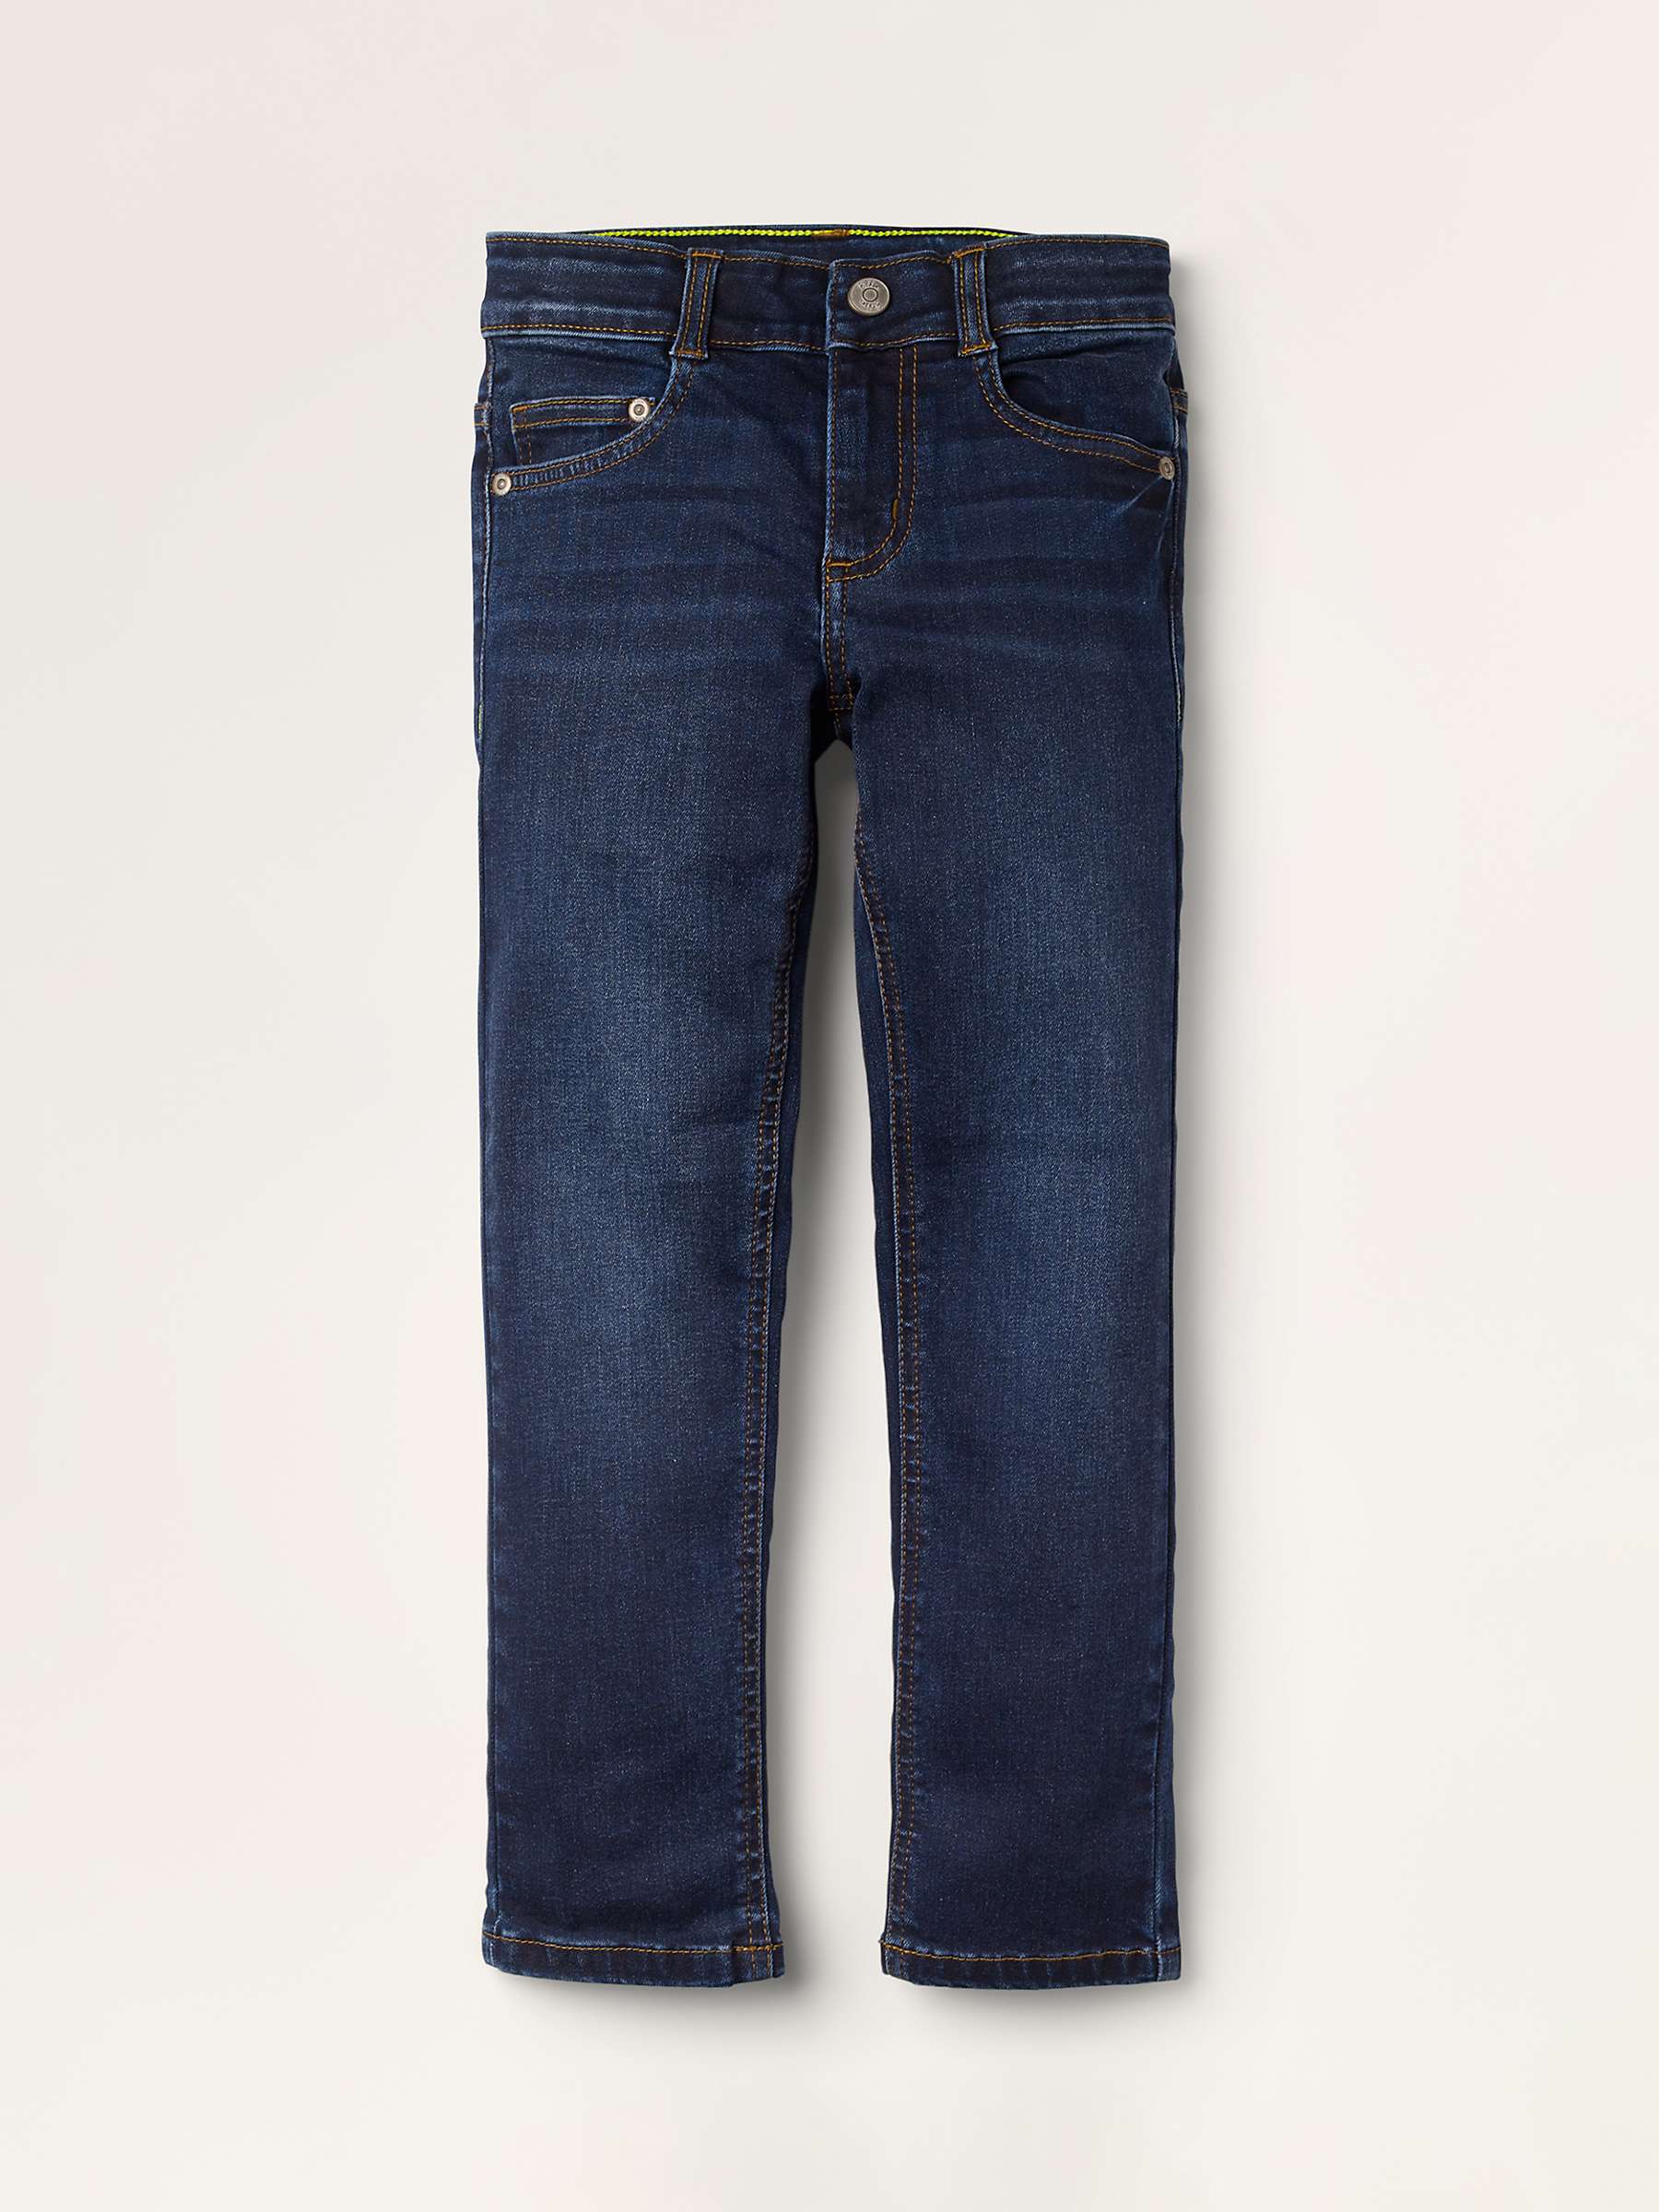 Buy Mini Boden Boy's Adventure Flex Slim Jeans, Dark Vintage Online at johnlewis.com